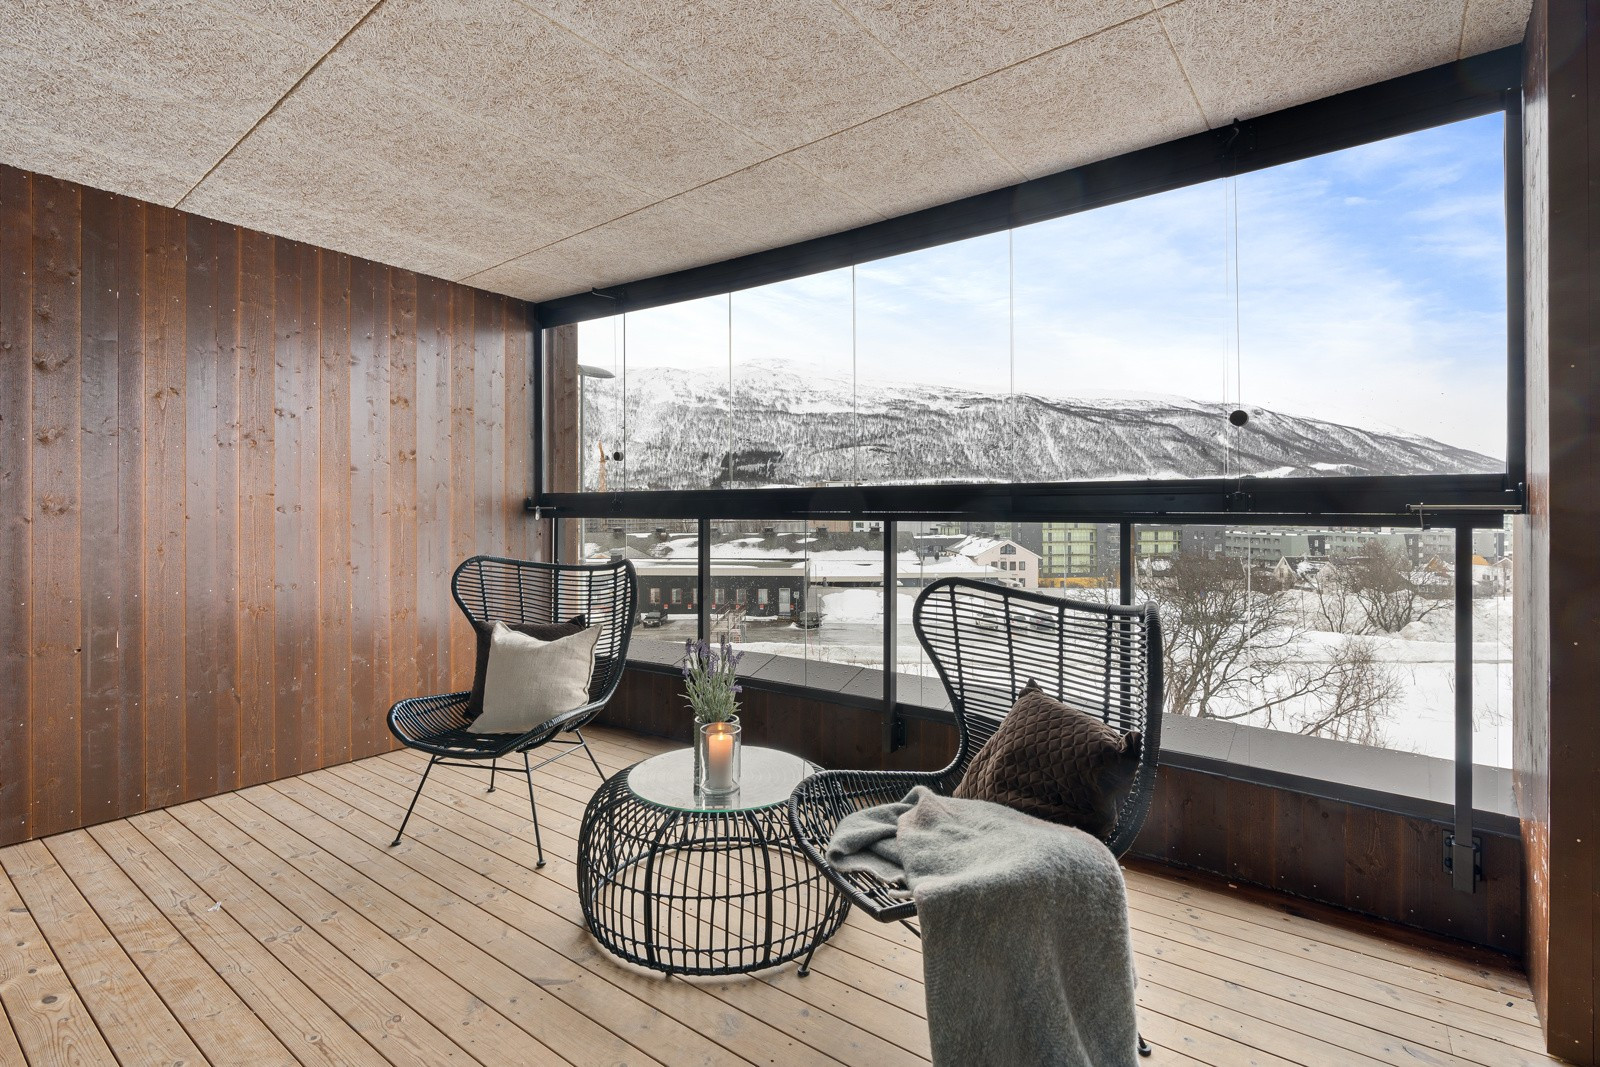 Glassveggen kan åpnes opp, og du har flott utsikt mot innseilingen til Tromsø i sør. Leiligheten ligger i byggets 3.etasje.